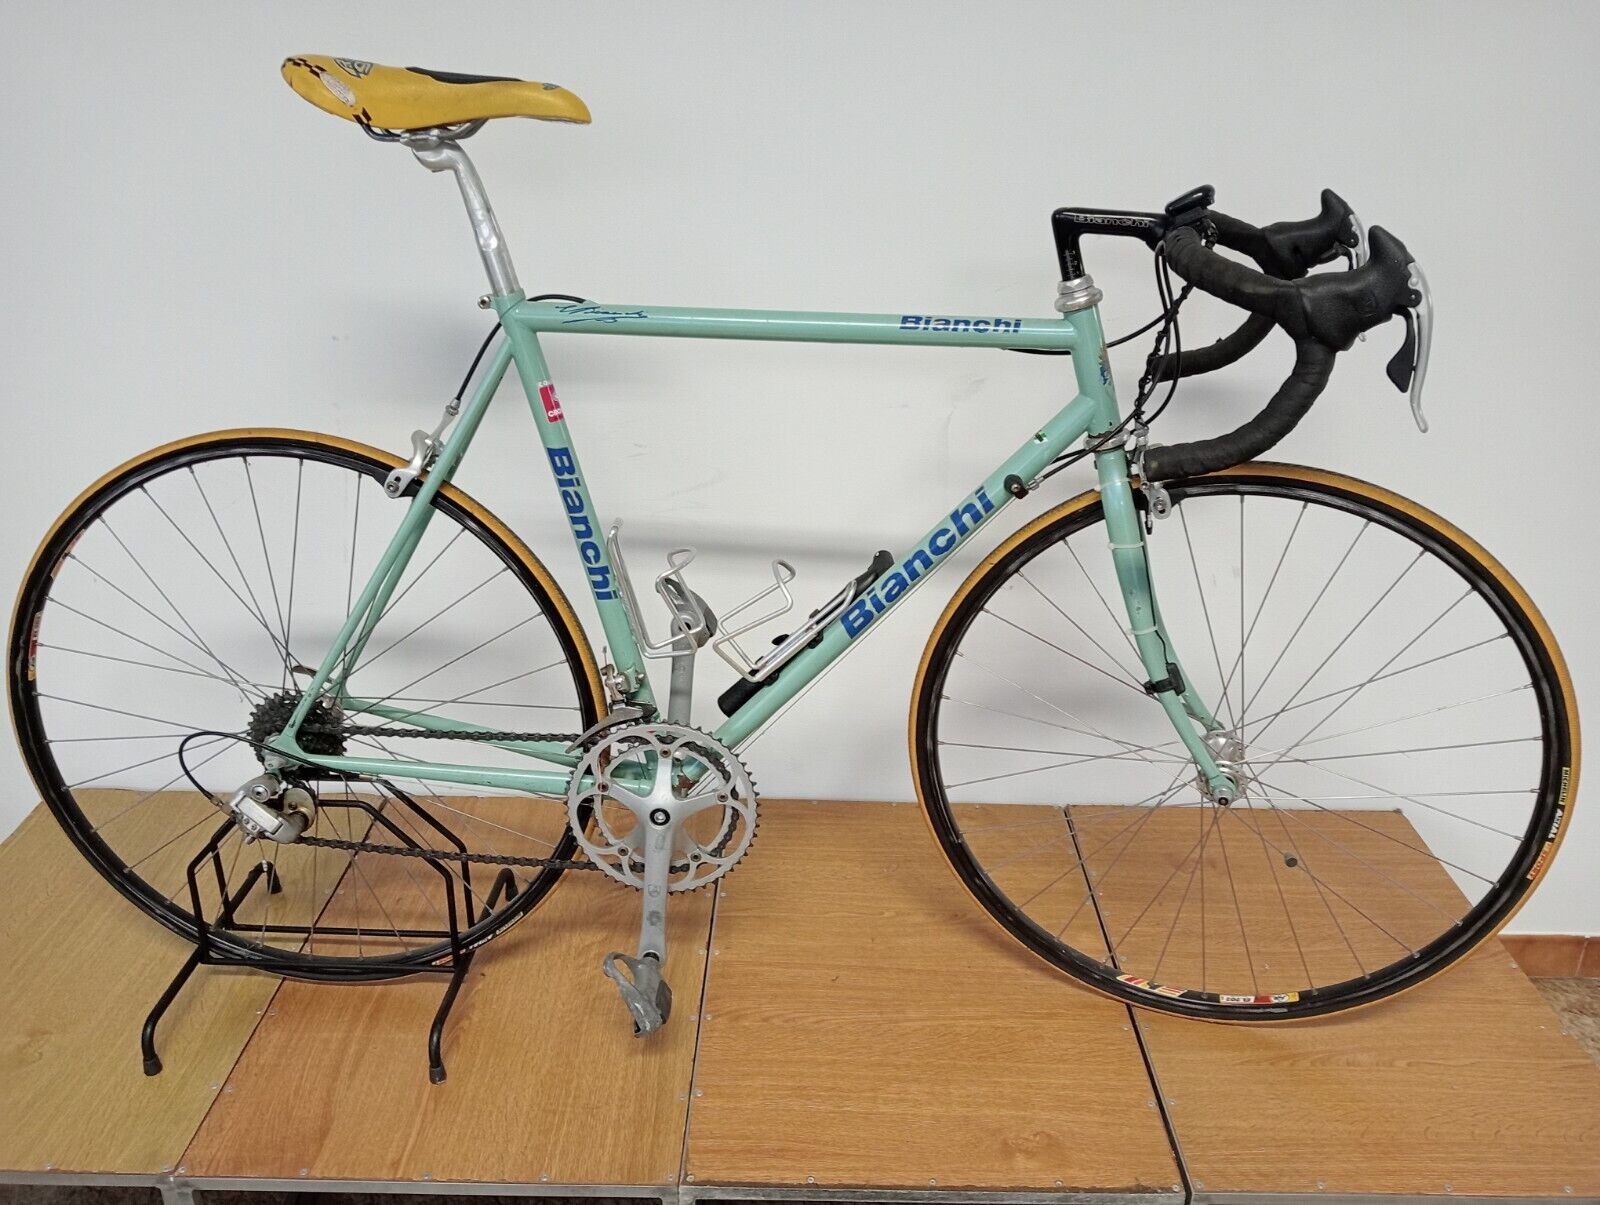 Bianchi campione del mondo Years 90 campagnolo Shifter Racing Bicycle, Vintage